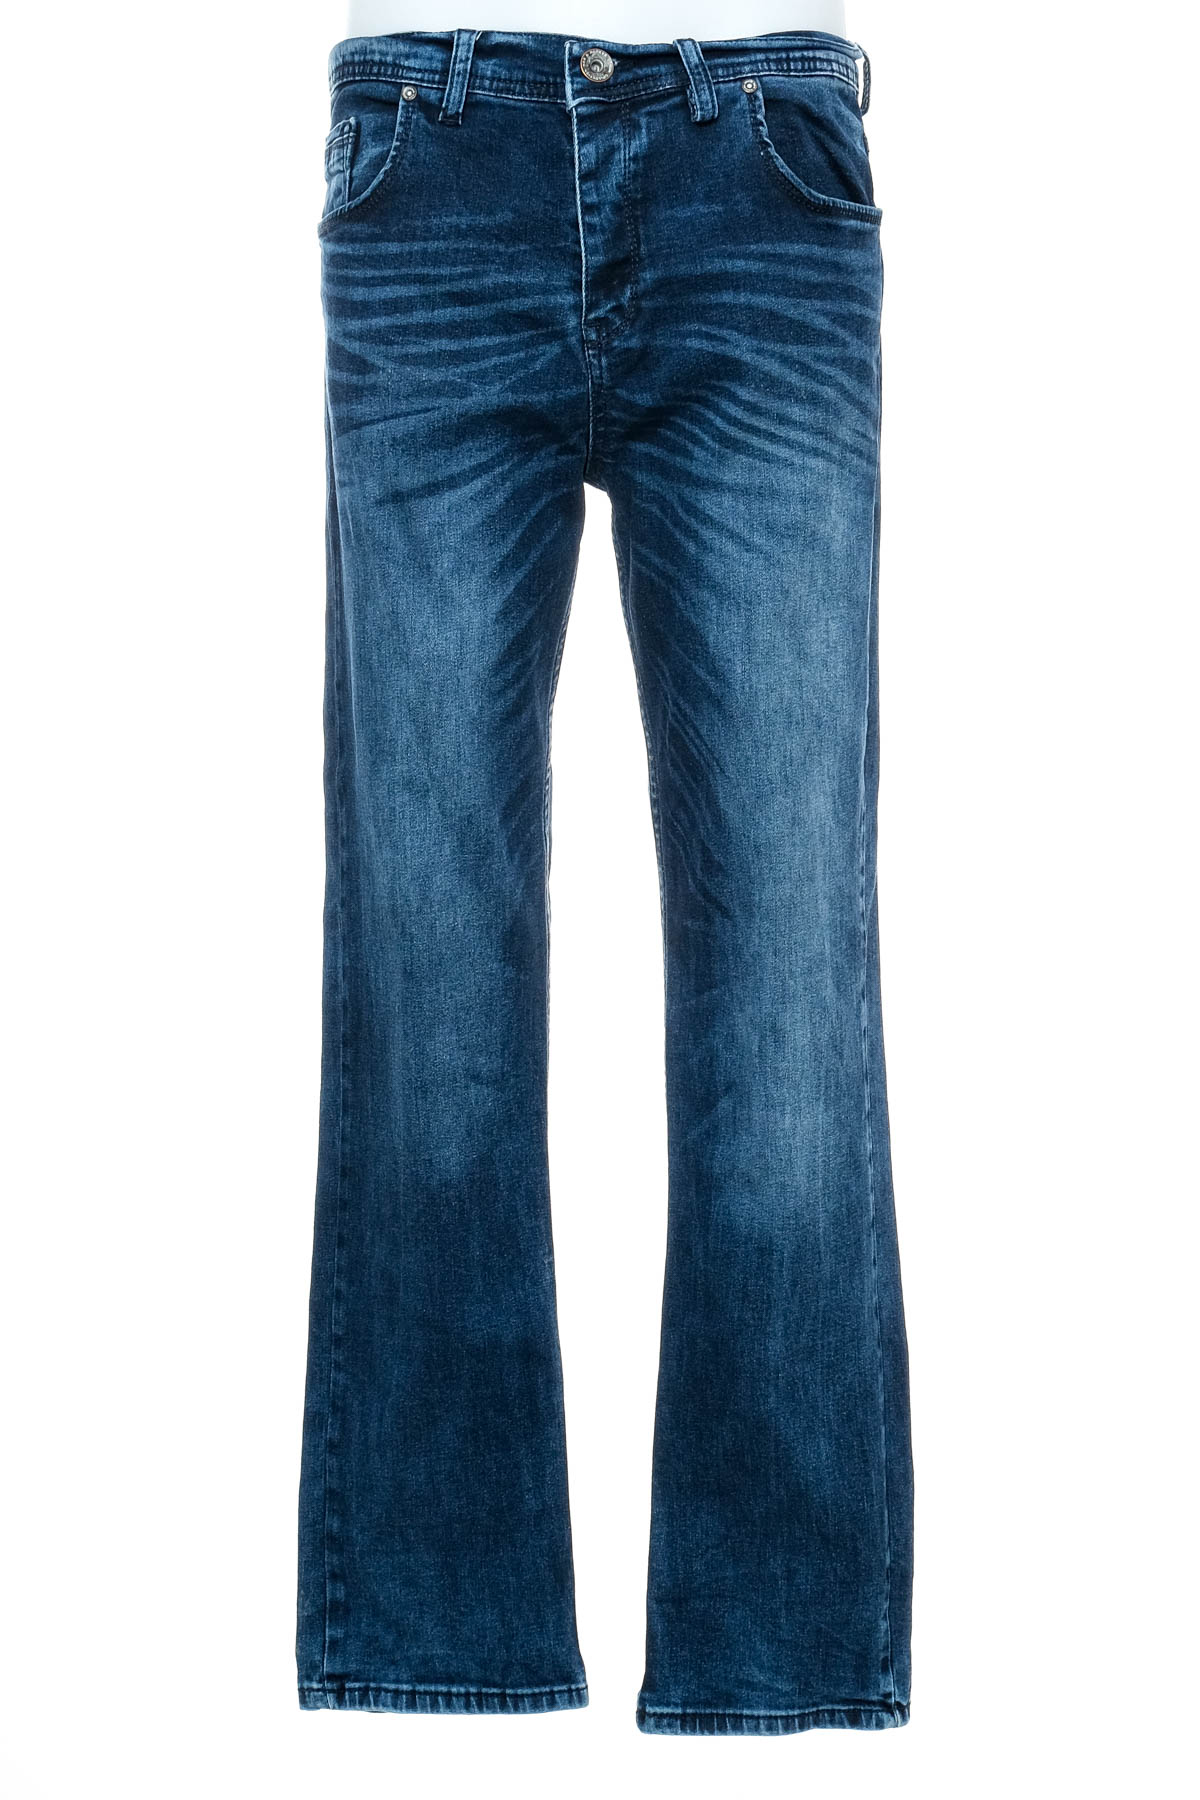 Men's jeans - Hacker - 0